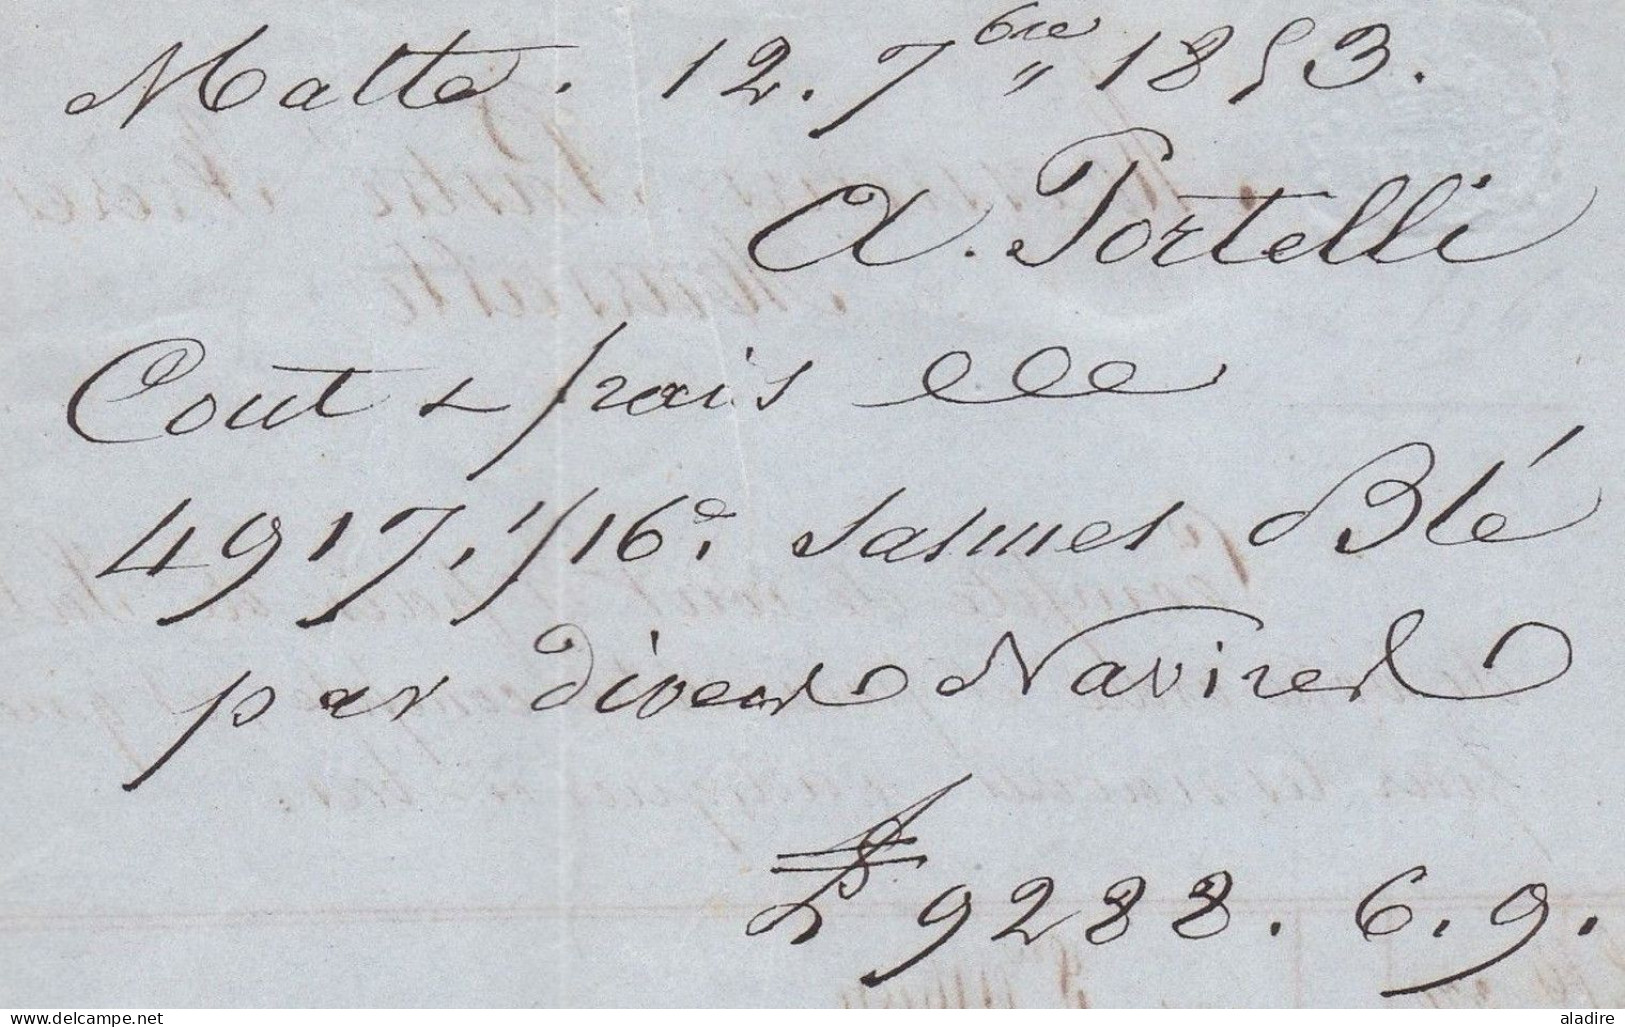 1853 - Lettre Pliée Avec Correspondance En Français De MALTA, Malte, GB Vers MARSEILLE, France - Taxe 8 - Malta (...-1964)